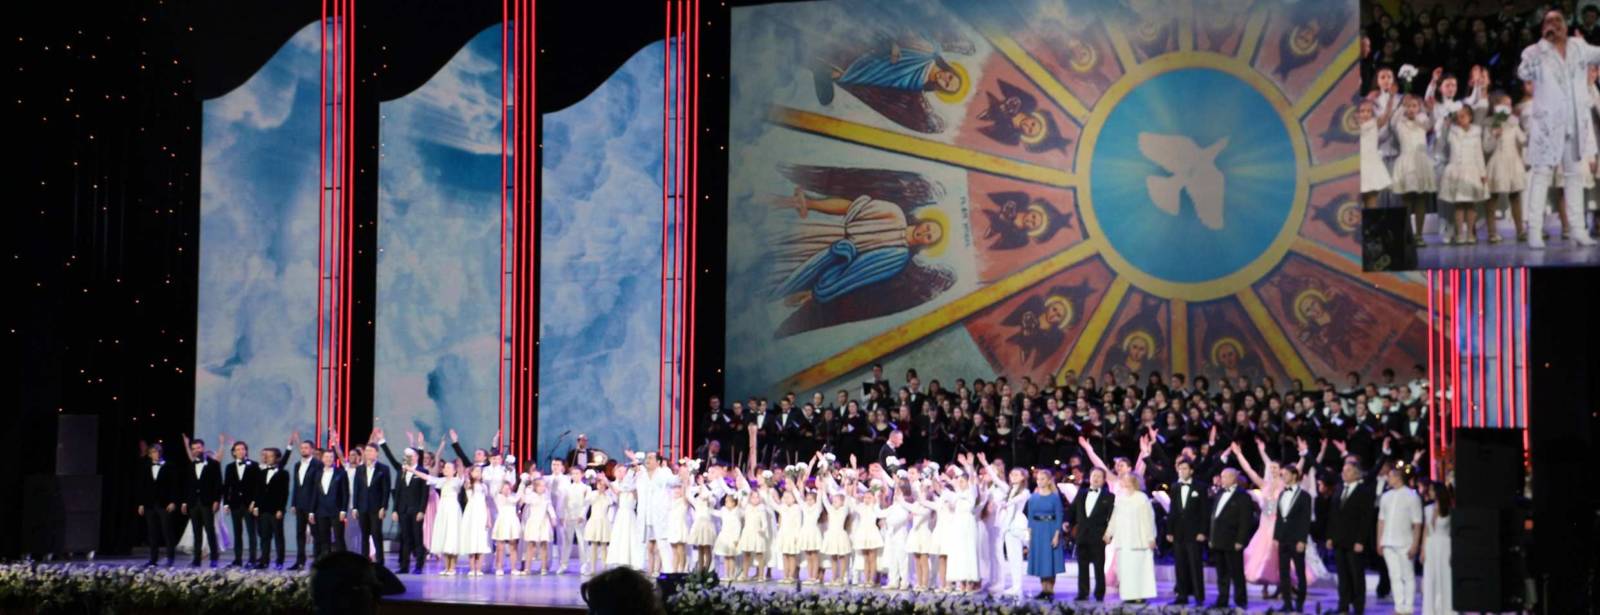 В Московском Кремле состоялось торжественное открытие XXVI Международных Рождественских образовательных чтений.